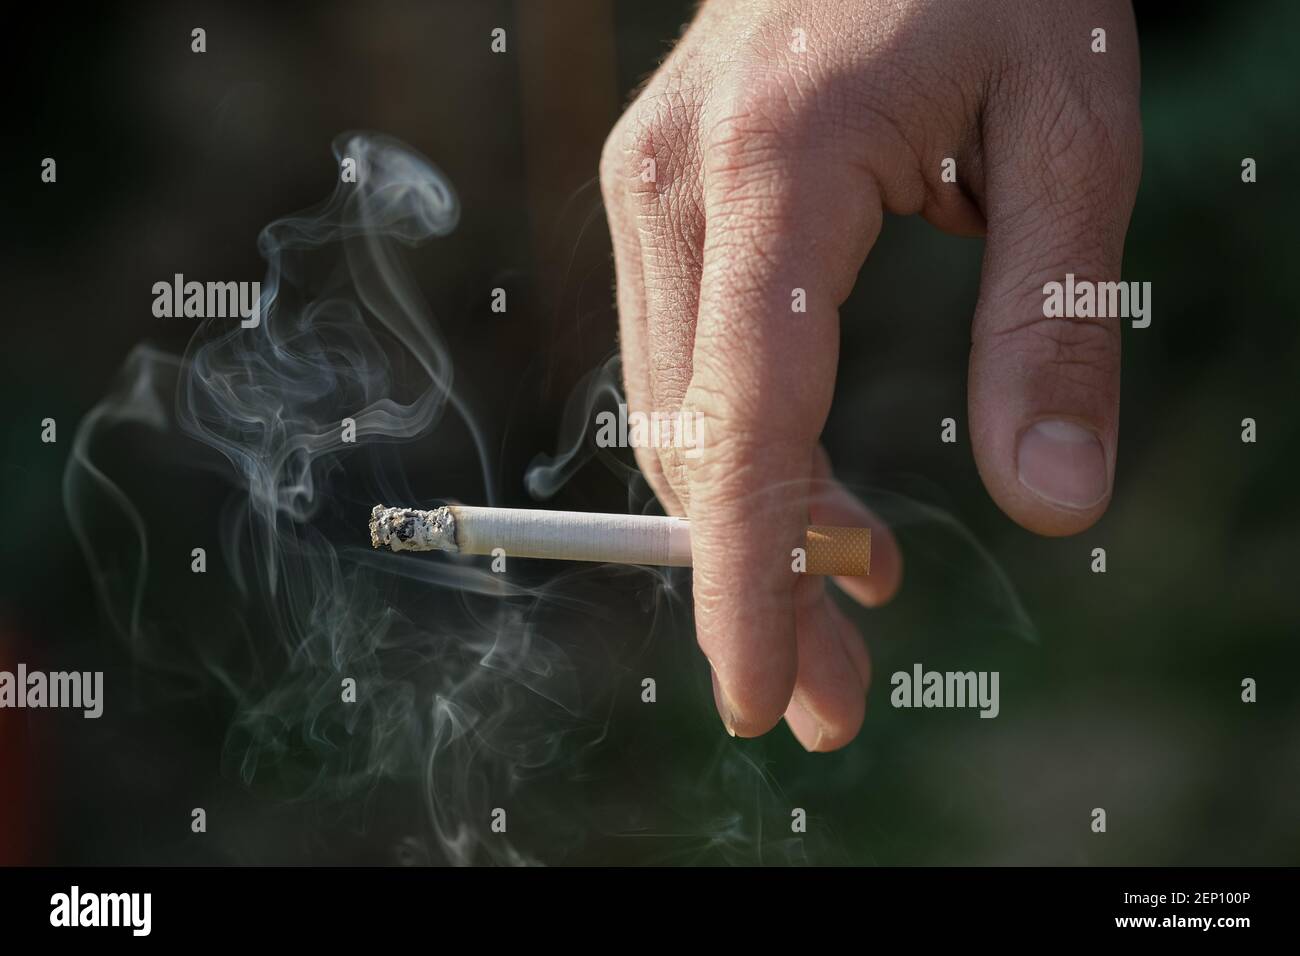 Mann Hand halten brennende Zigarette während des Rauchens, Tabakrauchsucht, ungesunder Lebensstil Stockfoto